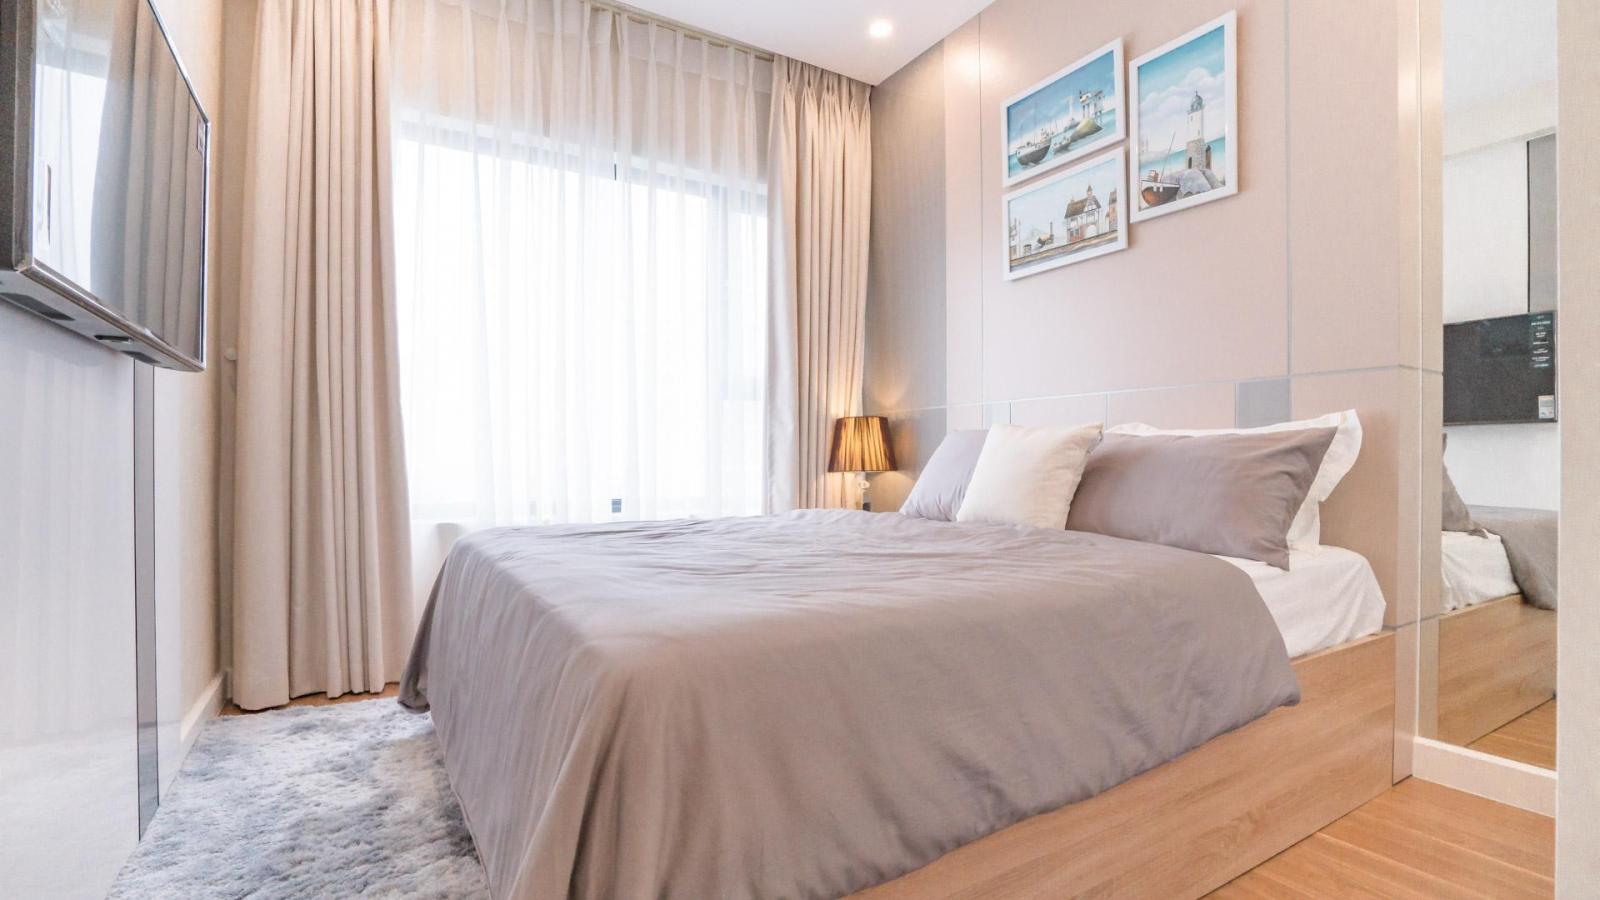 Cho thuê căn hộ Cantavil quận 2, 120m2, 3PN giá tốt nhất thị trường 17 tr/th, nội thất cao cấp